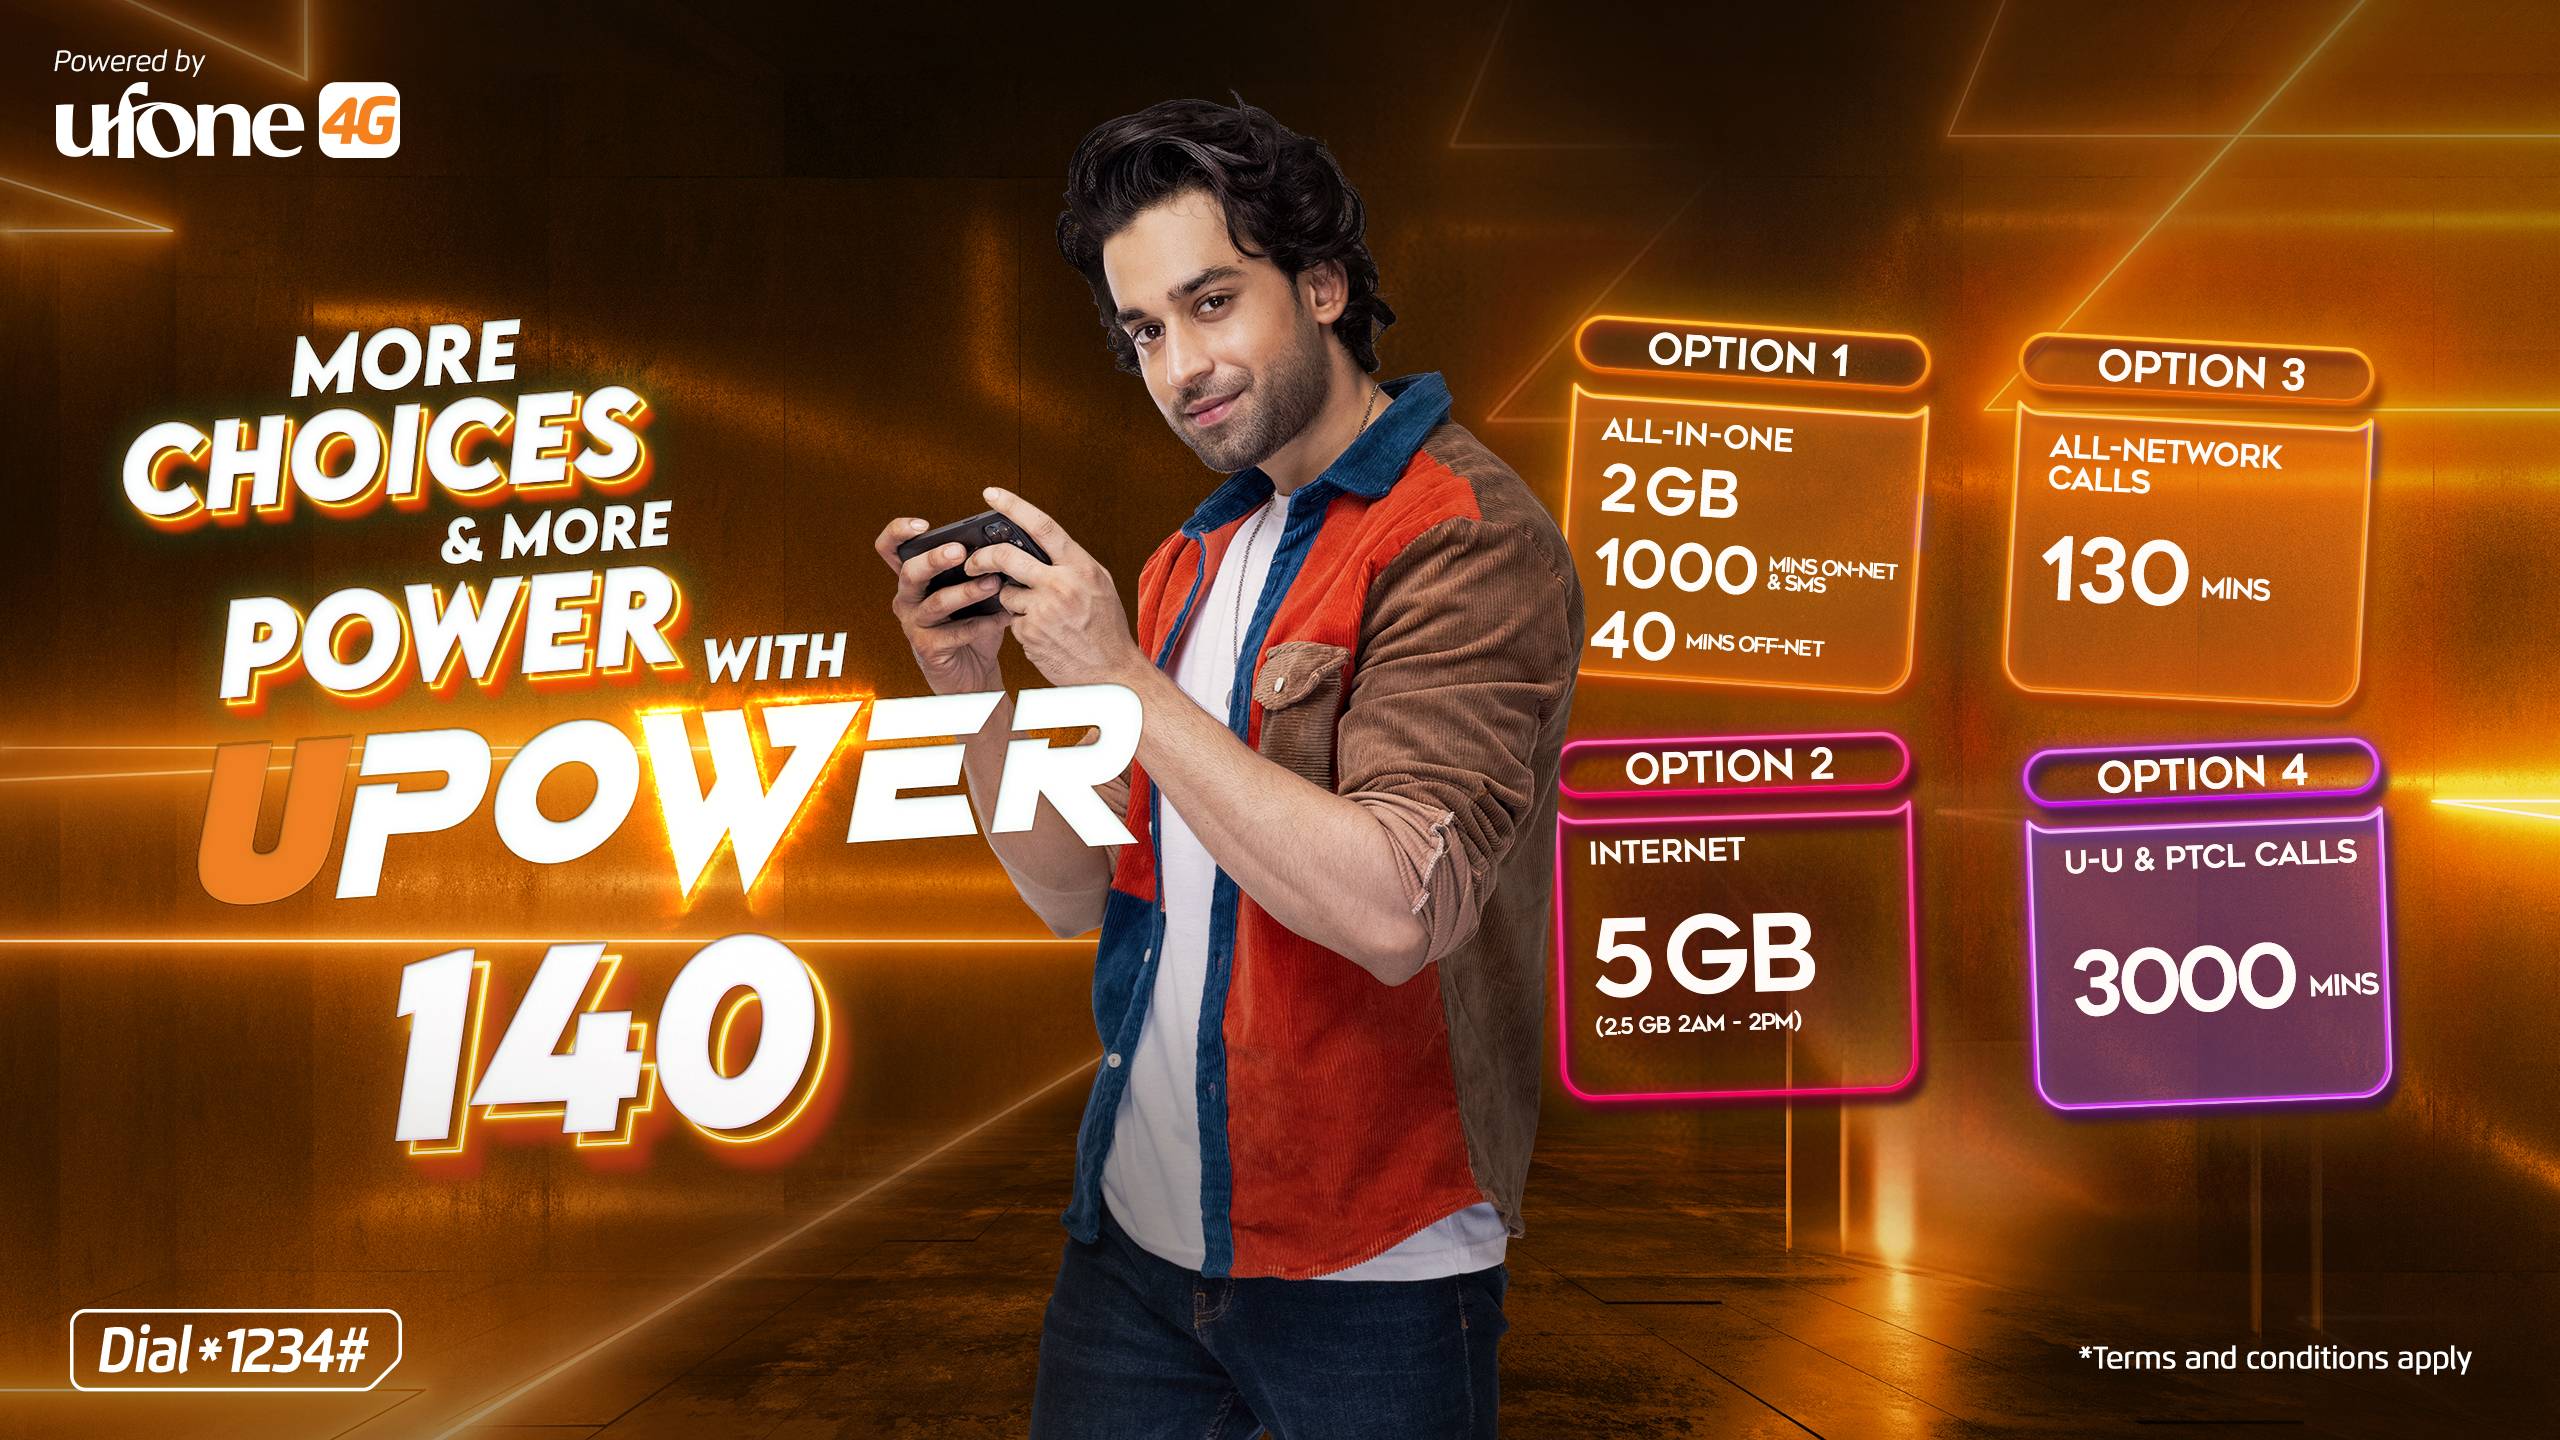 Ufone 4G expandsits bundleportfolio by launching ‘UPower140’